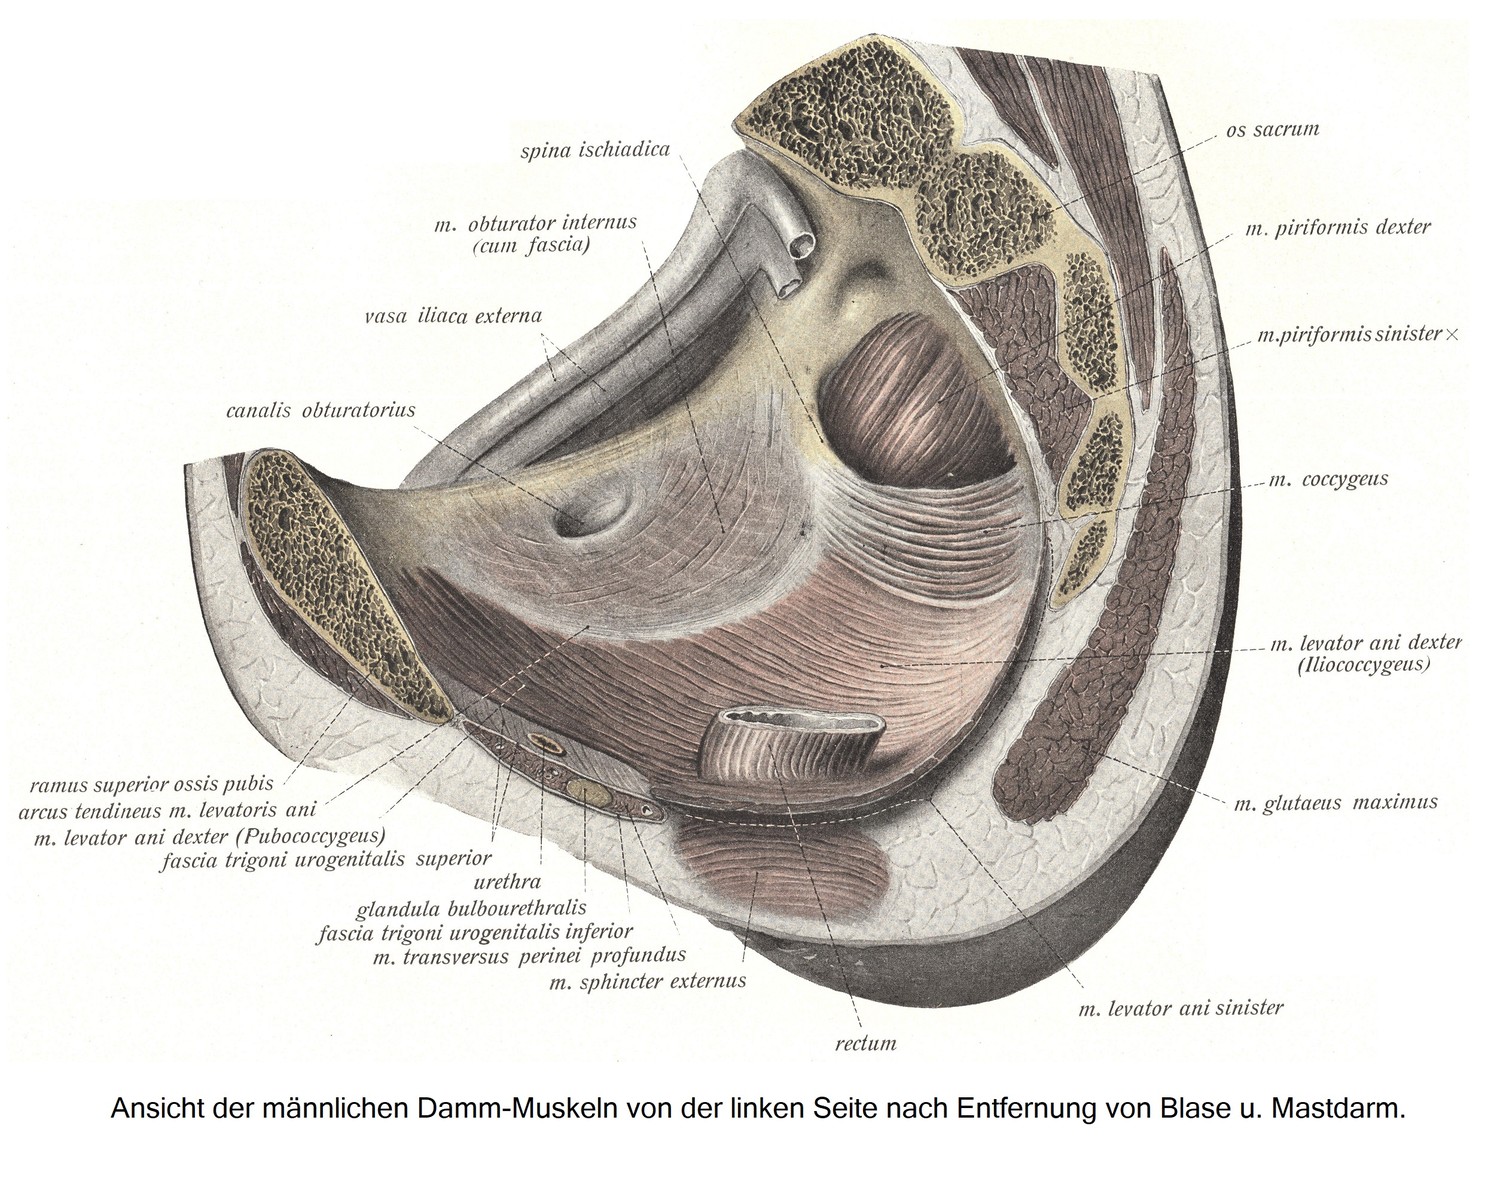 Damm-Muskeln, musculi perinei